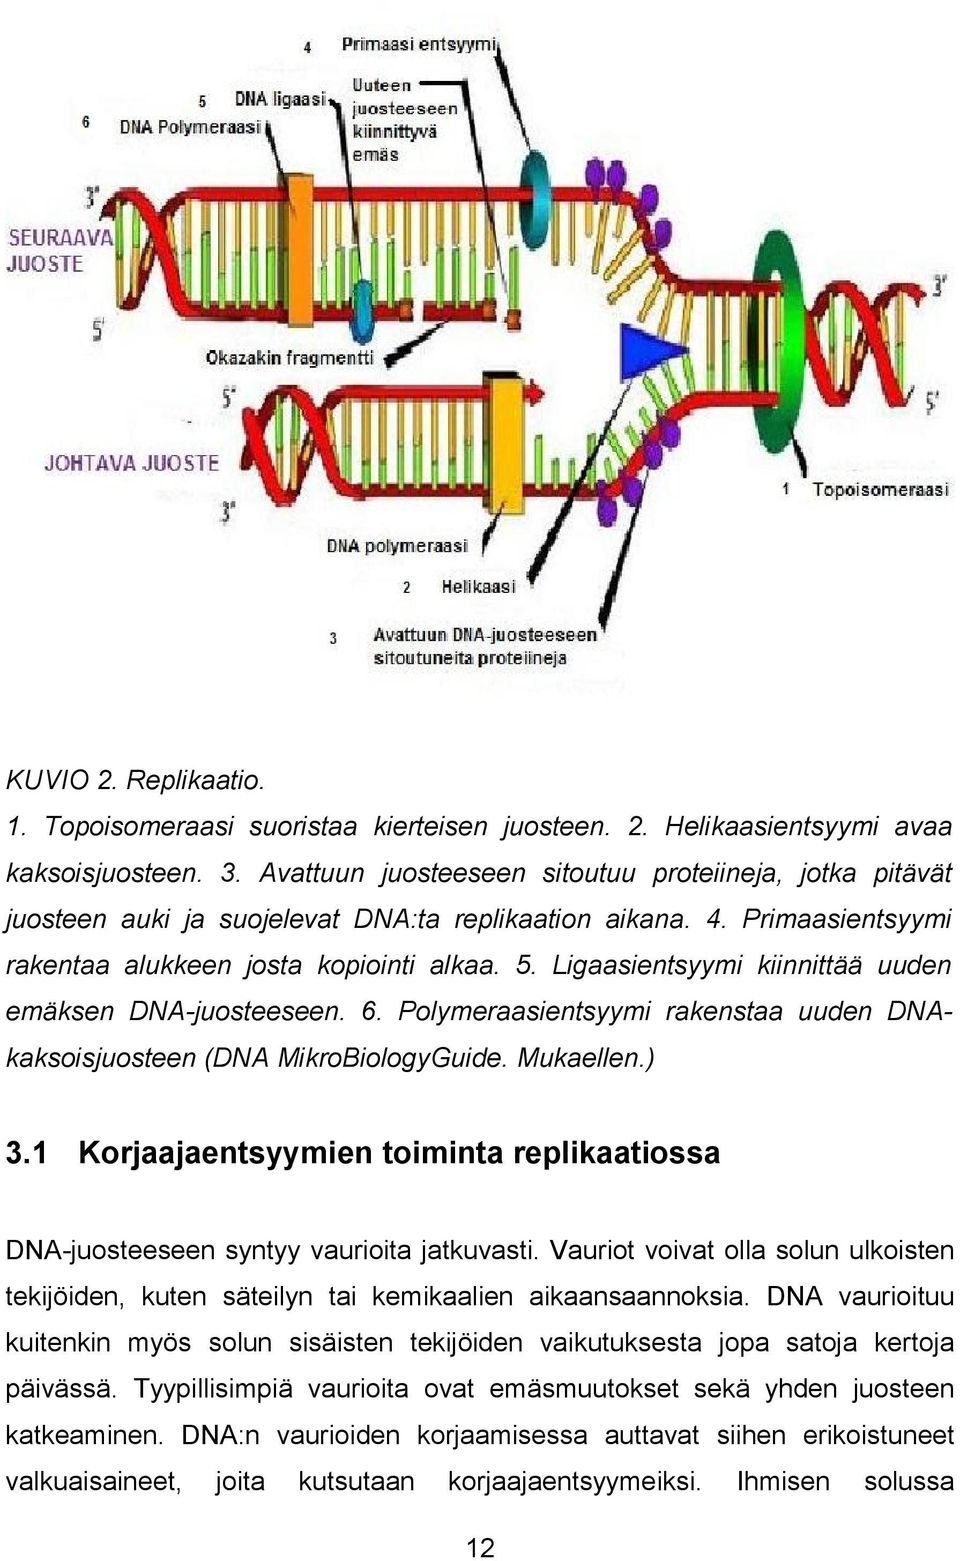 Ligaasientsyymi kiinnittää uuden emäksen DNA-juosteeseen. 6. Polymeraasientsyymi rakenstaa uuden DNAkaksoisjuosteen (DNA MikroBiologyGuide. Mukaellen.) 3.